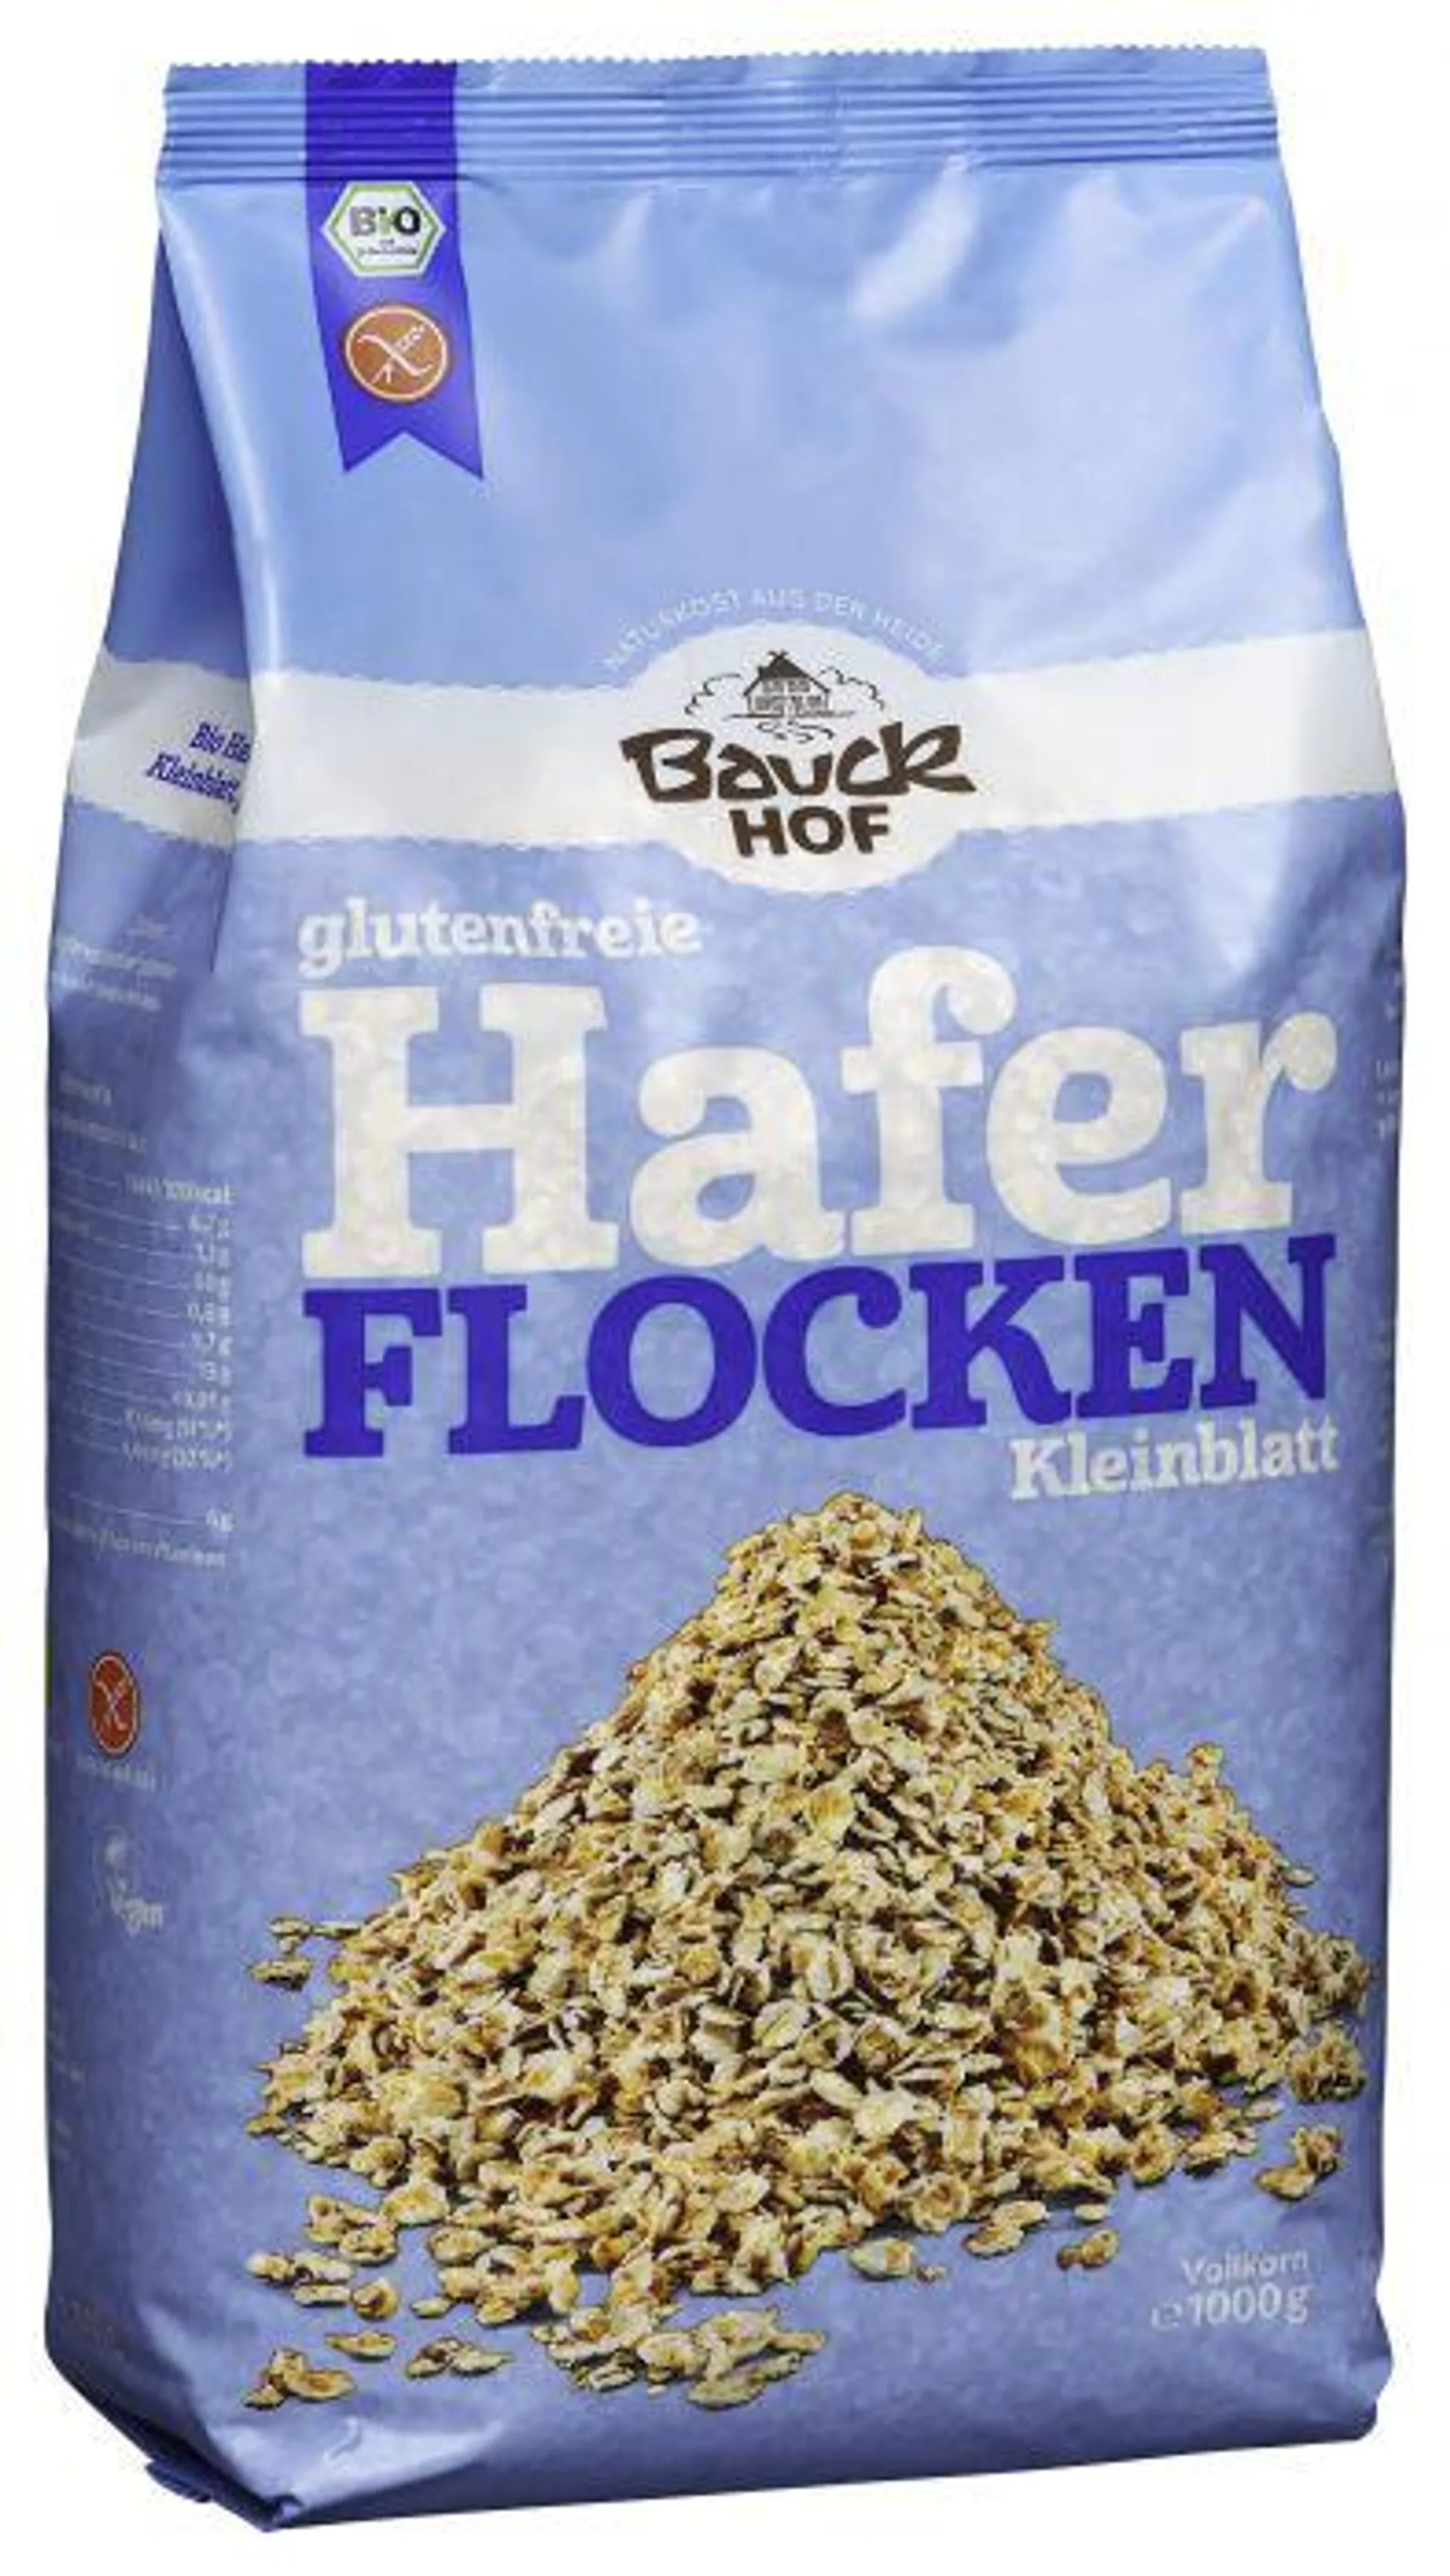 Bauckhof Haferflocken Kleinblatt glutenfrei Bio 1000g